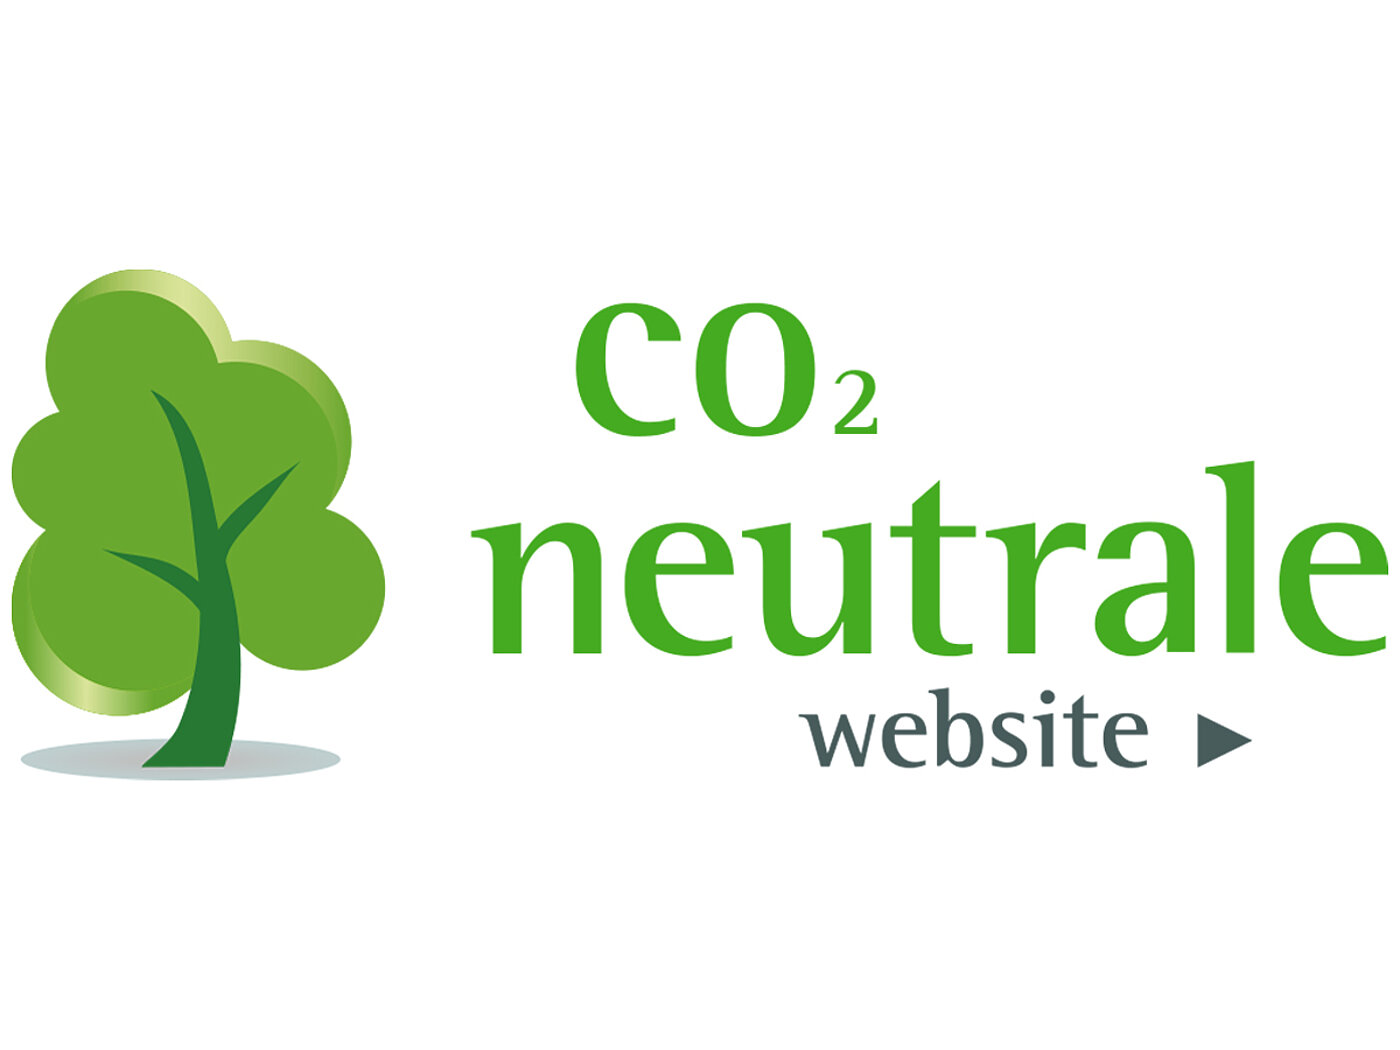 ein Logo mit der Textbotschaft 'CO2-neutrale Website' in kleingeschriebenen grünen Buchstaben, links daneben ein stilisierter grüner Baum, der Wachstum und Umweltfreundlichkeit symbolisiert, alles dargestellt auf weißem Hintergrund